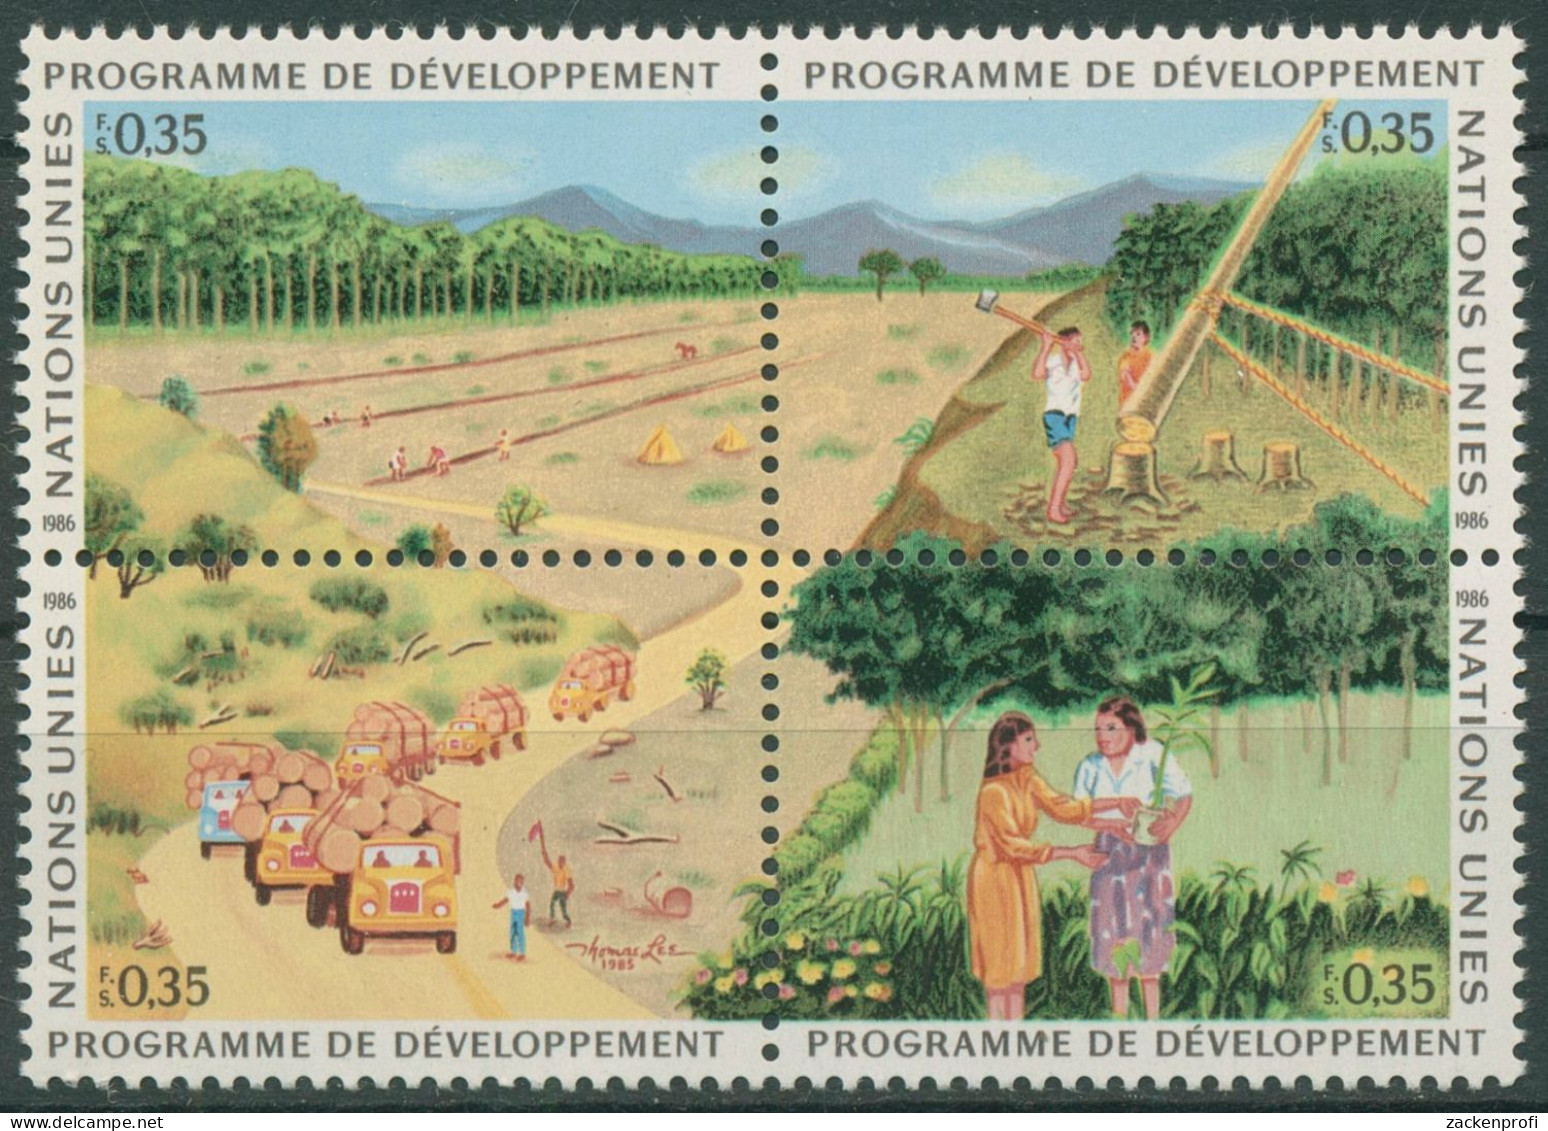 UNO Genf 1986 Entwicklungsprogramm Wald Aufforstung 138/41 ZD Postfrisch - Ongebruikt